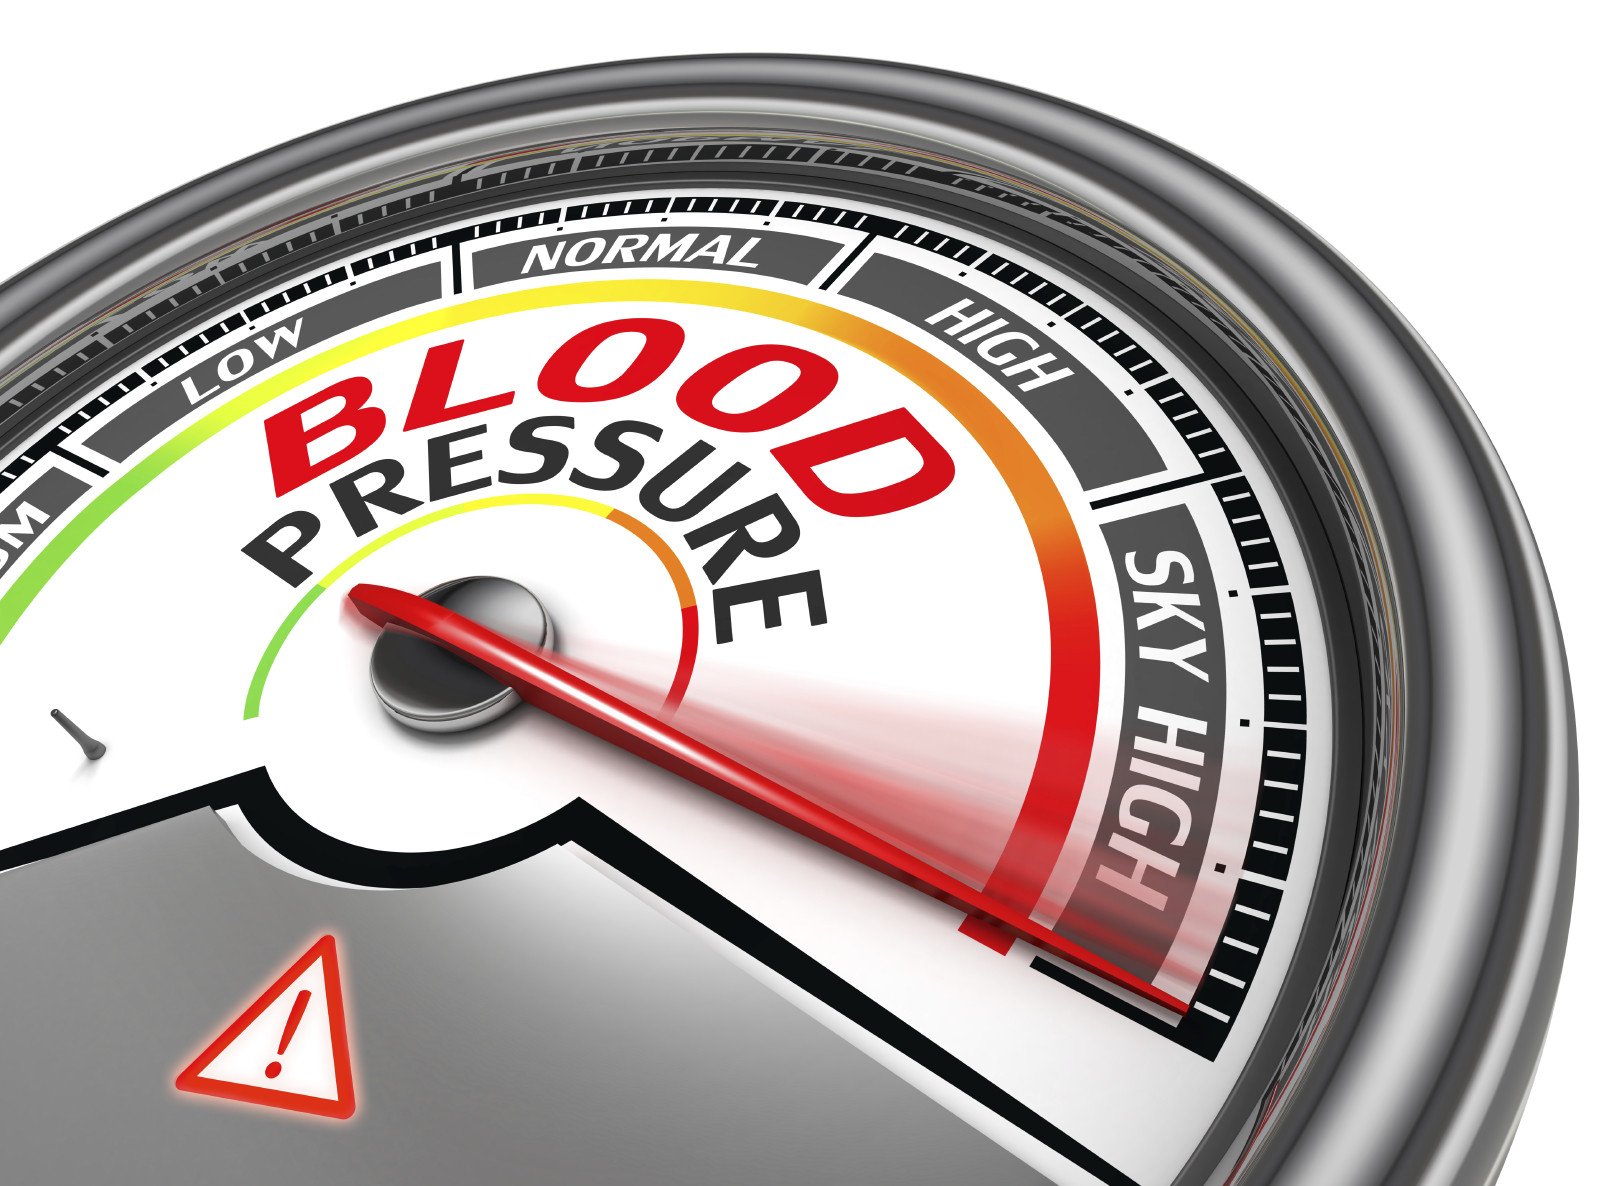 High blood pressure: Why me?